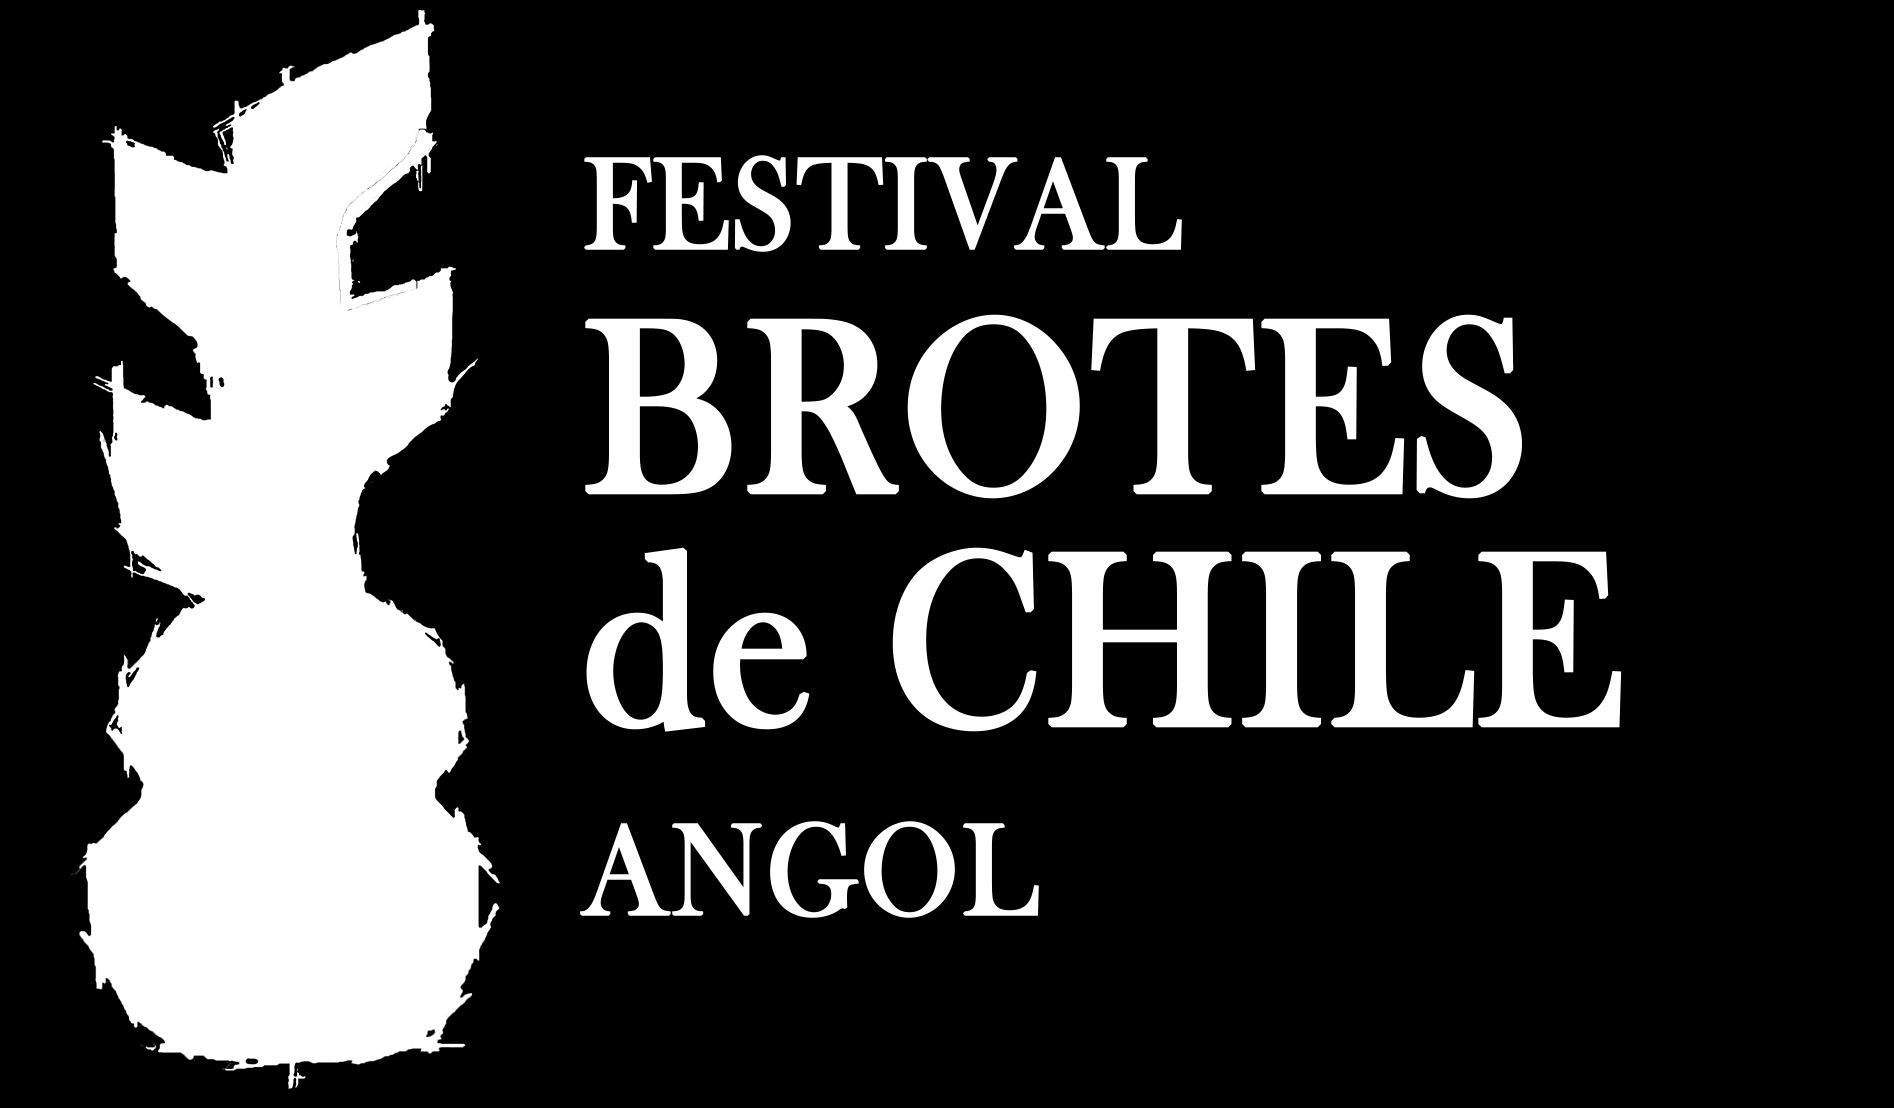 3434 FESTIVAL DE LA CANCIÓN DE GÉNERO FOLCLÓRICO BROTES DE CHILE 19, 20 y 21 de Enero de 2017 DE LA PARTICIPACIÓN 1.